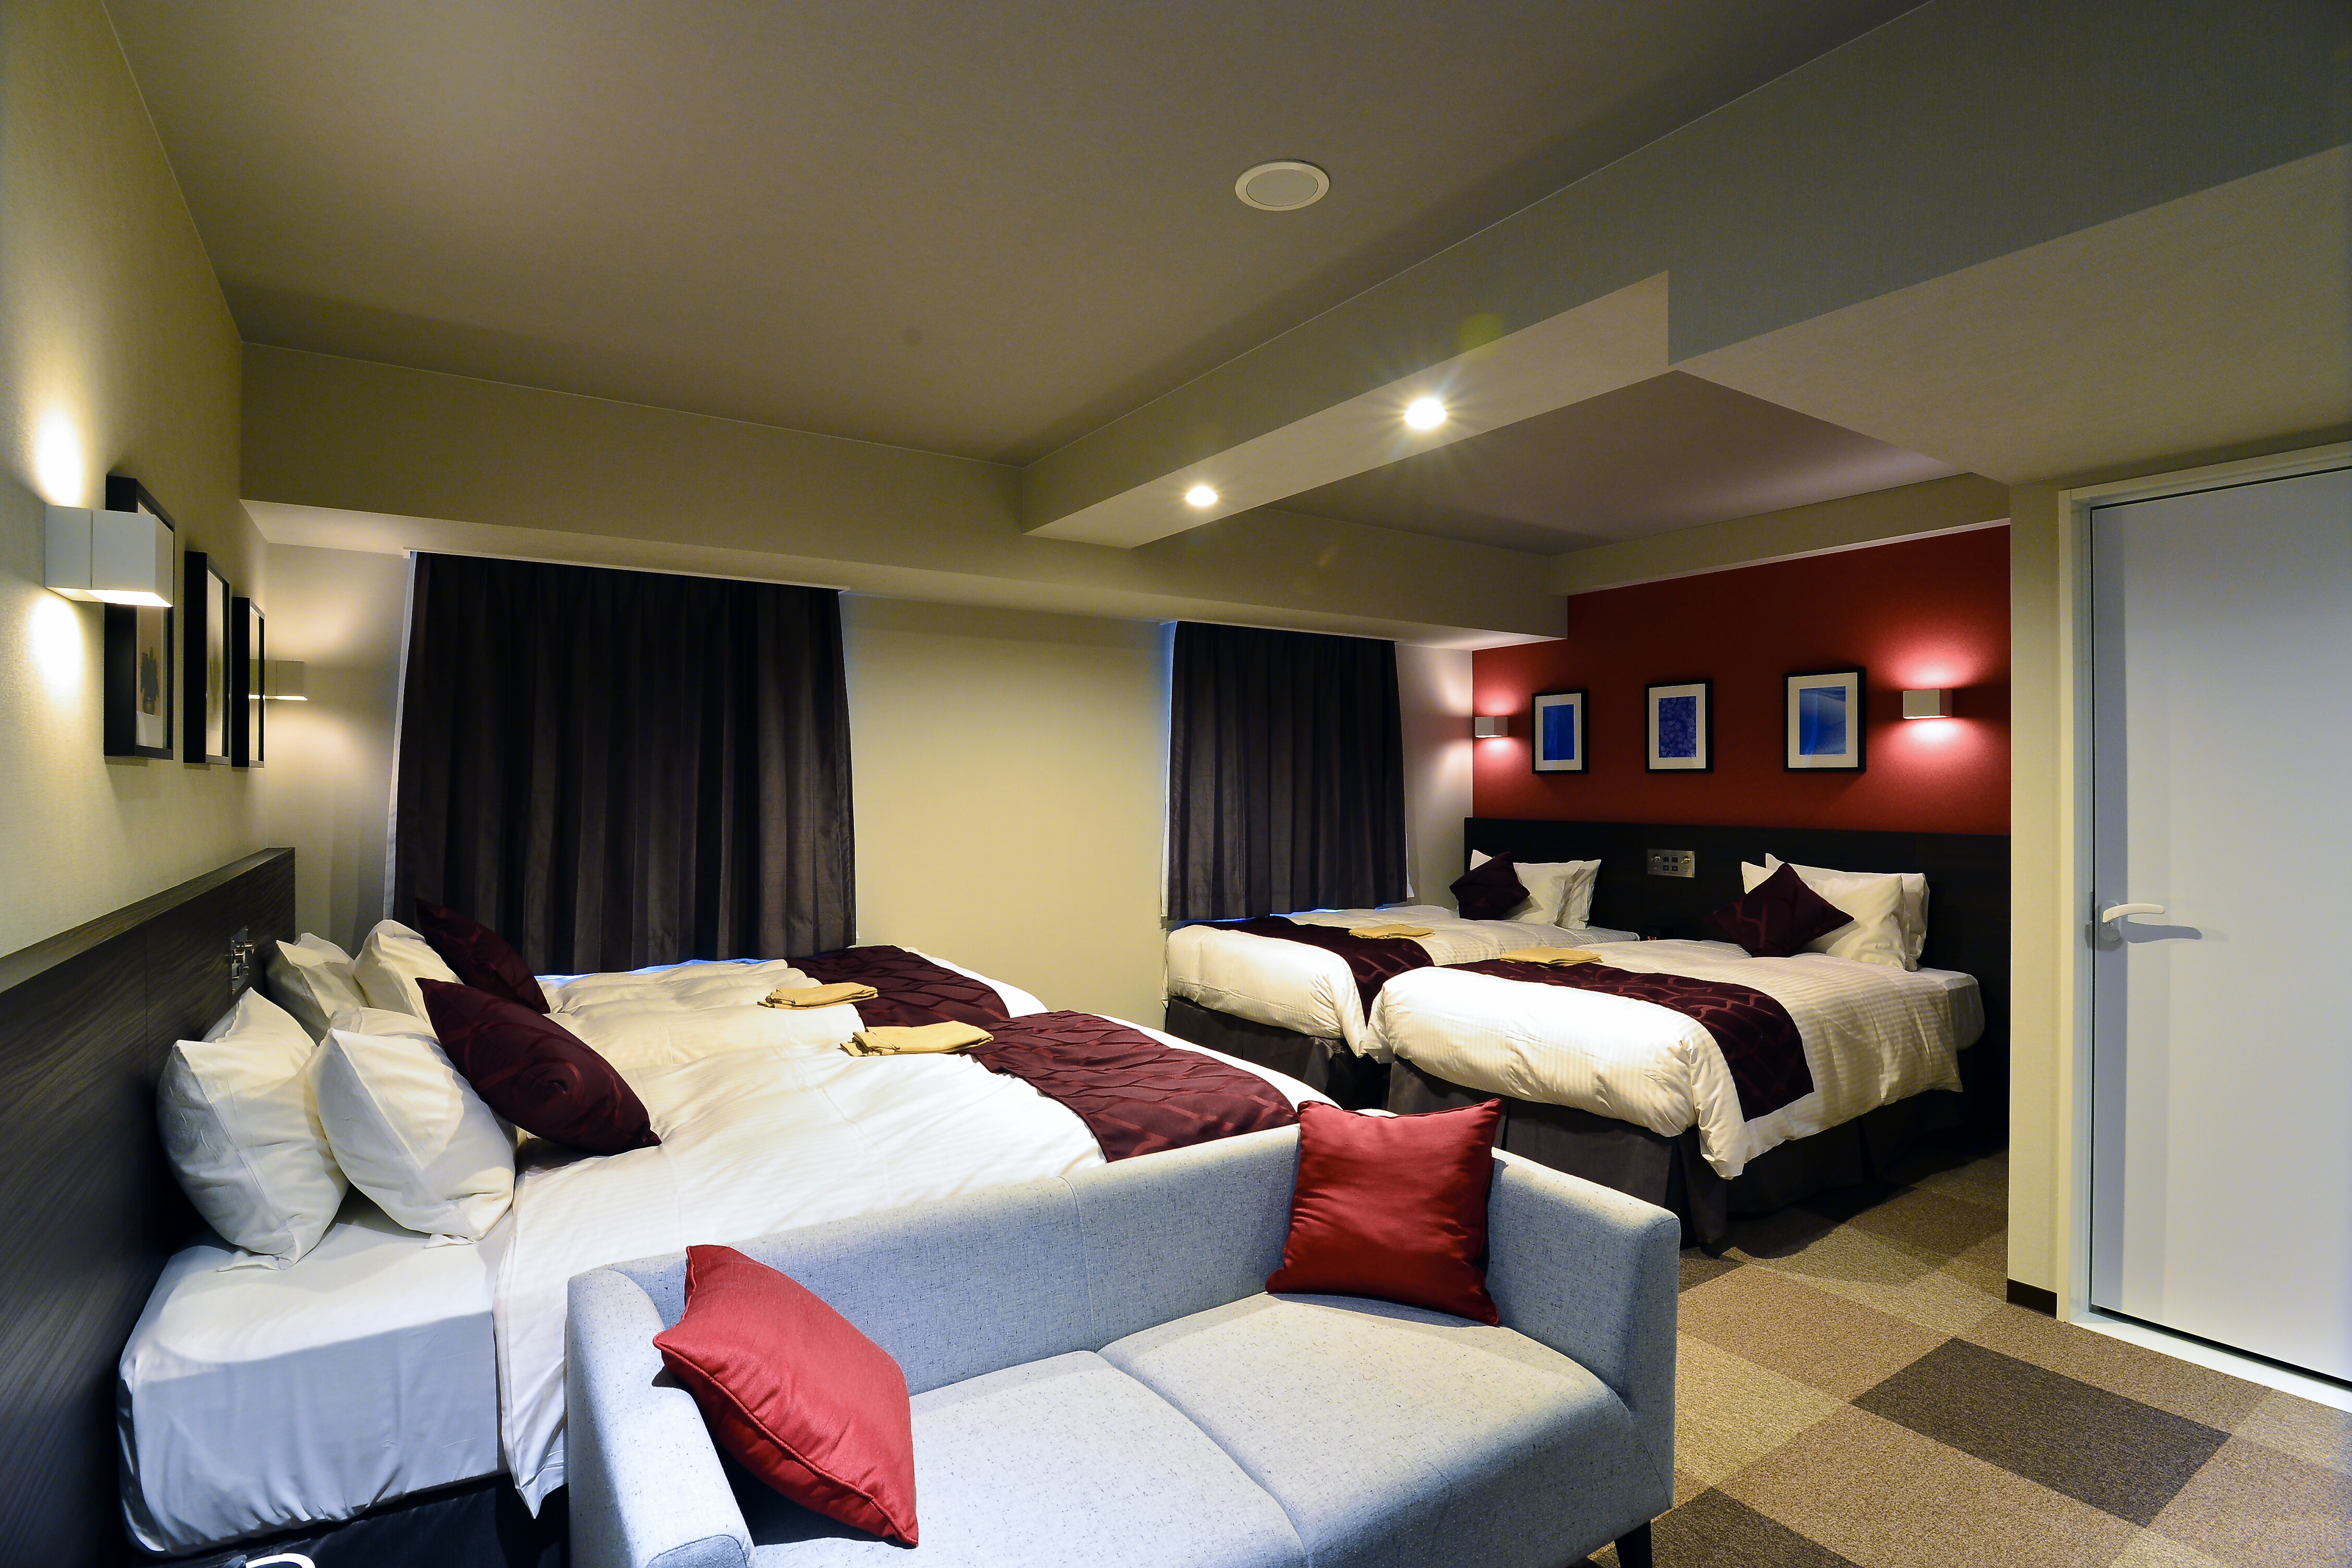 รีวิวBest Western Plus Hotel Fino Chitose - โปรโมชั่นโรงแรม 4 ดาวในชิโตเสะ | Trip.com